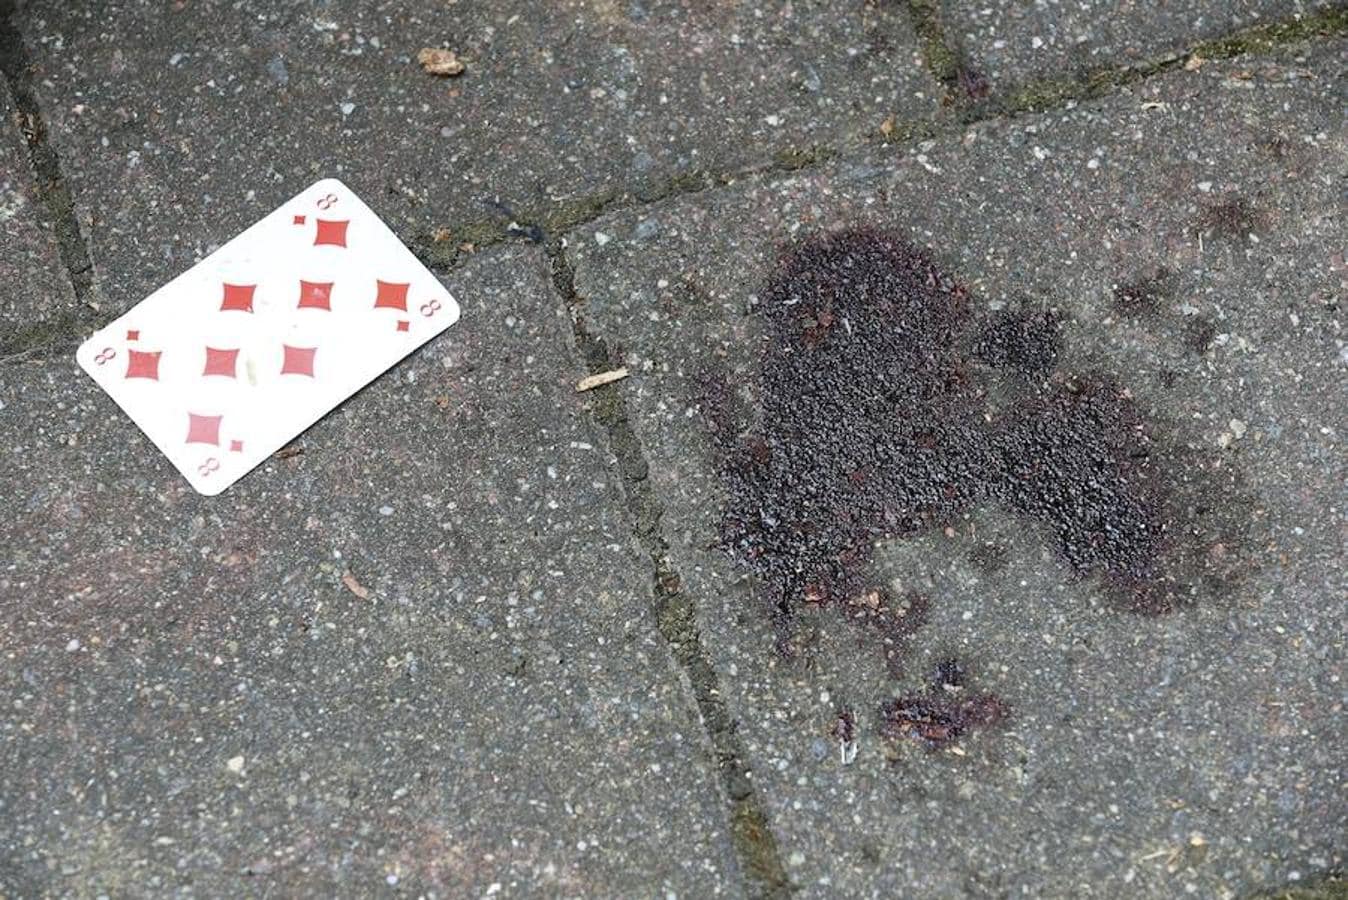 Vista del pavimento manchado con sangre en el lugar de una explosión en Ansbach (Alemania)